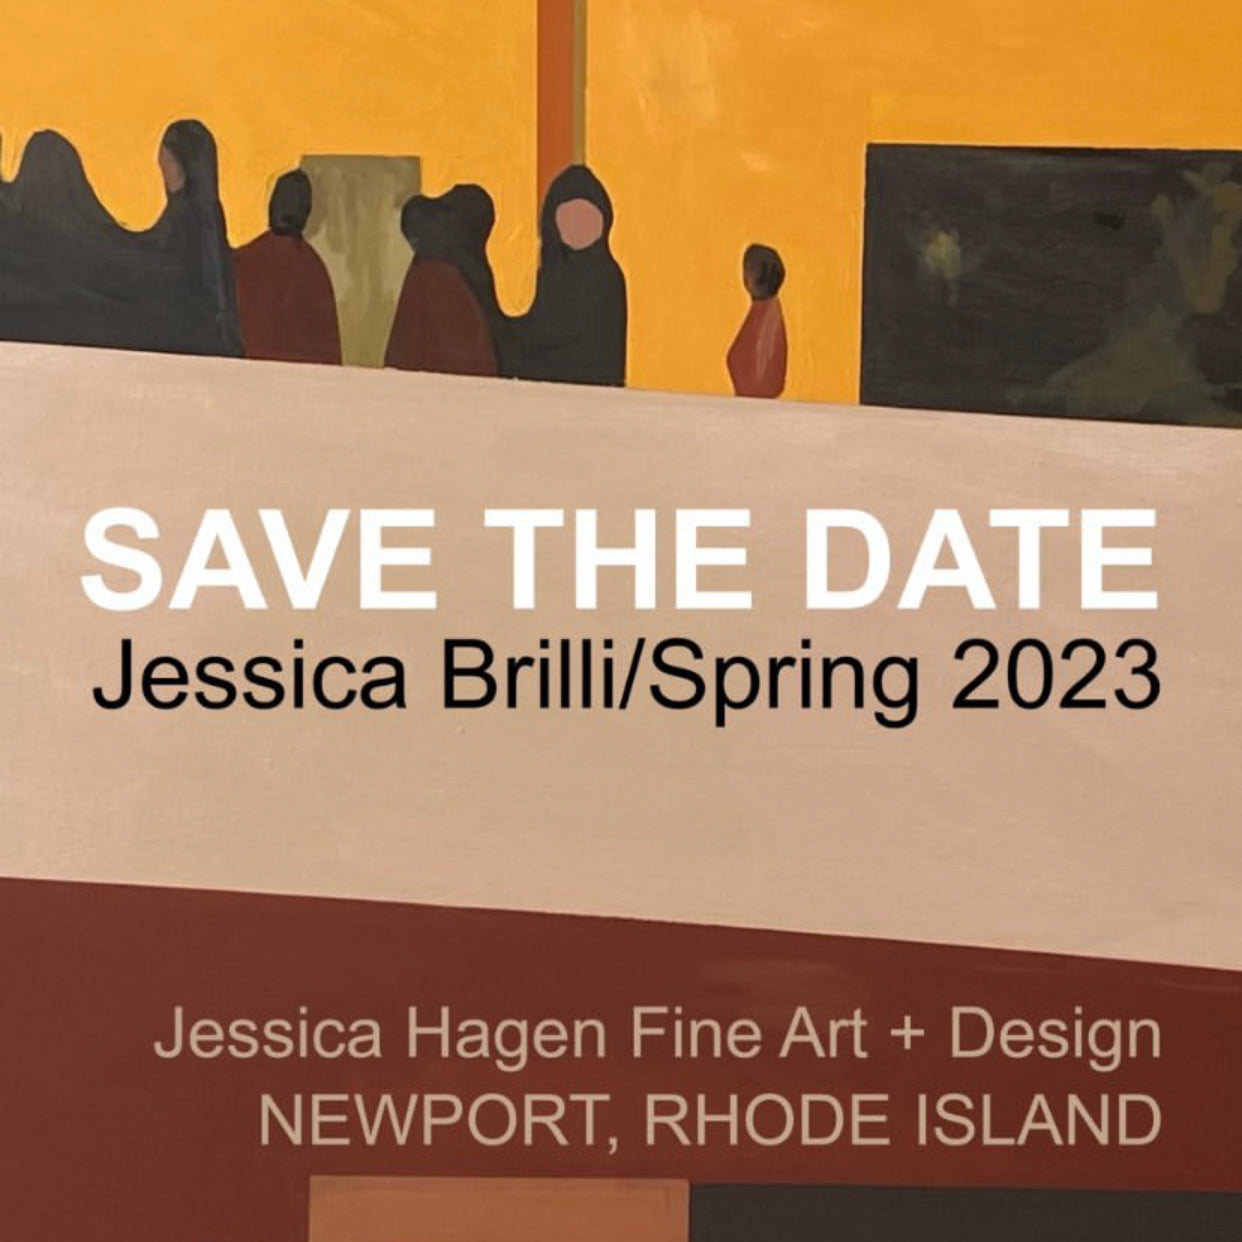 Jessica Brilli Spring Solo Exhibition in Newport, RI